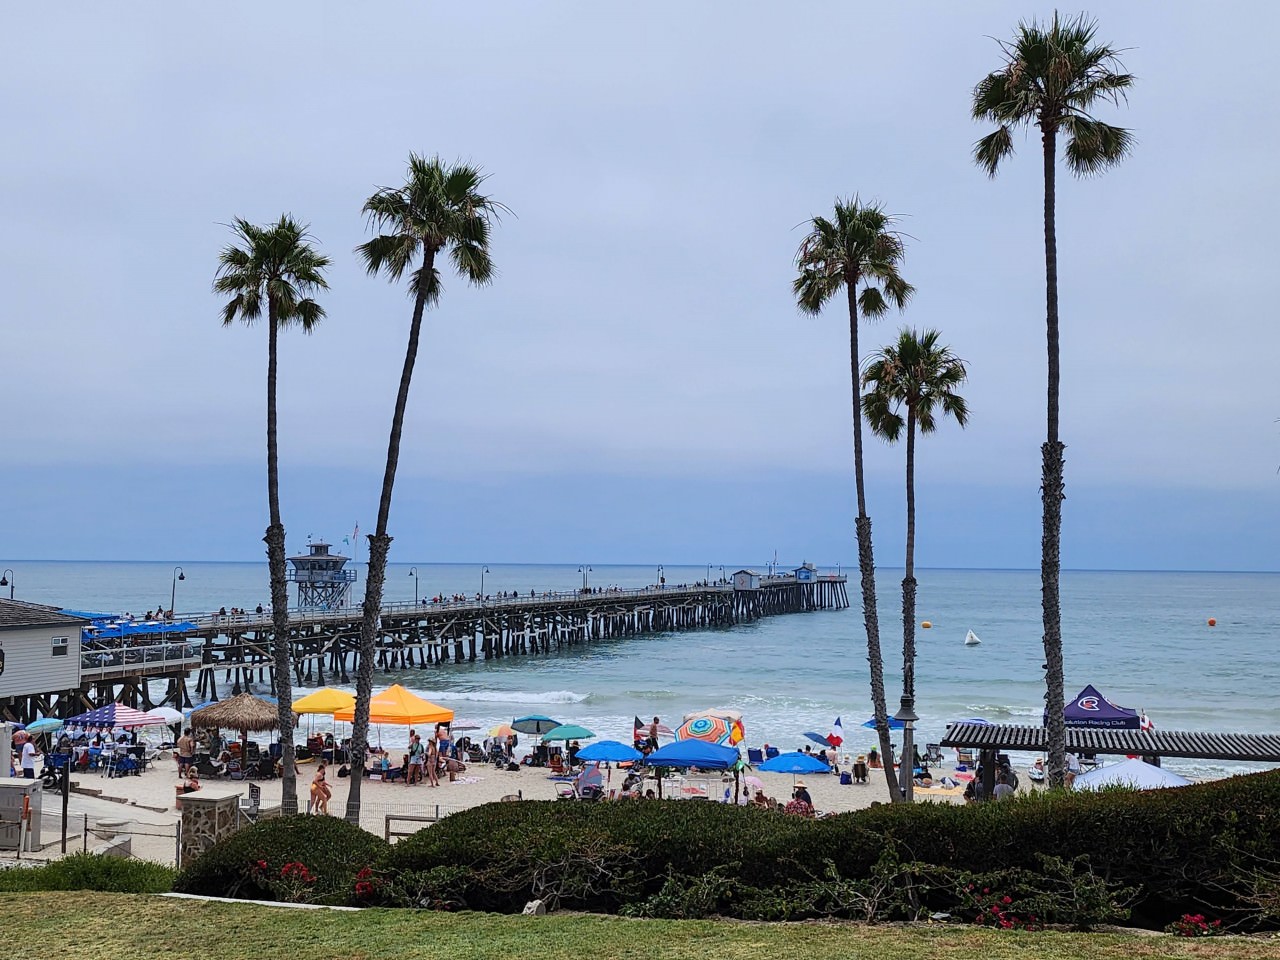 聖克萊門特碼頭 San Clemente Pier 伸入海中的木棧道和連綿的沙灘